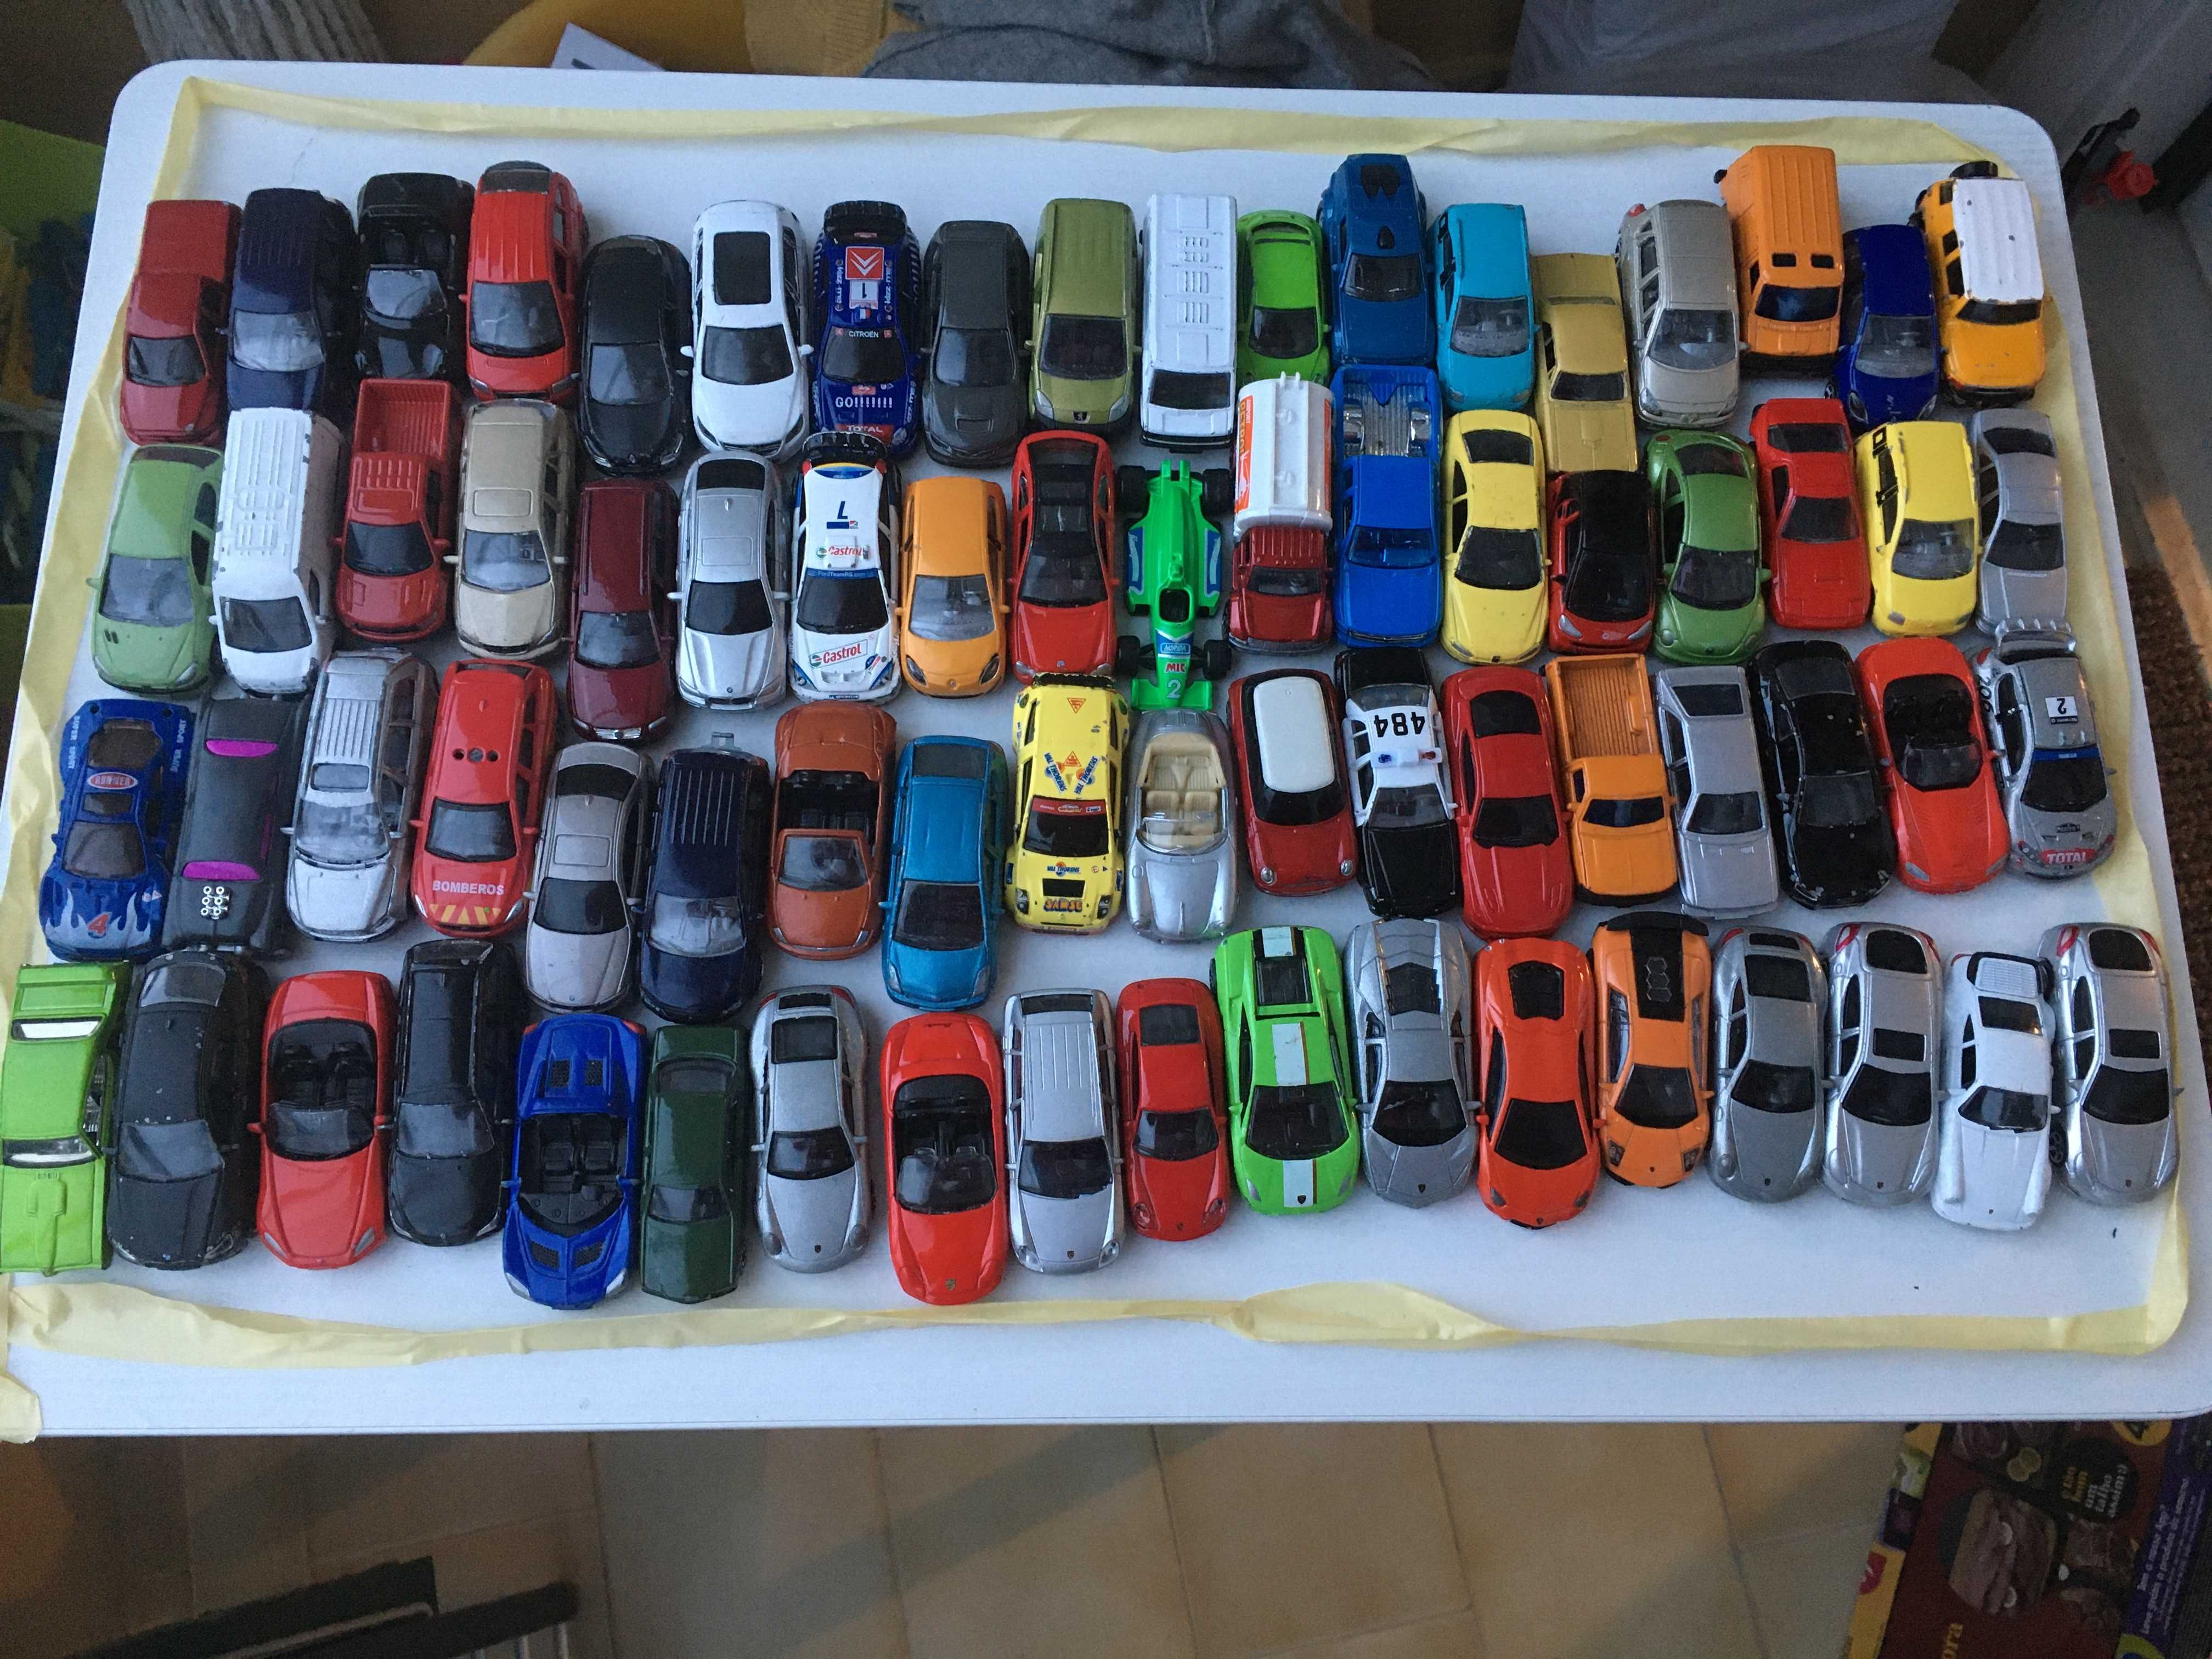 Carros de brincar, várias marcas e modelos, compra mínima 15 carros.